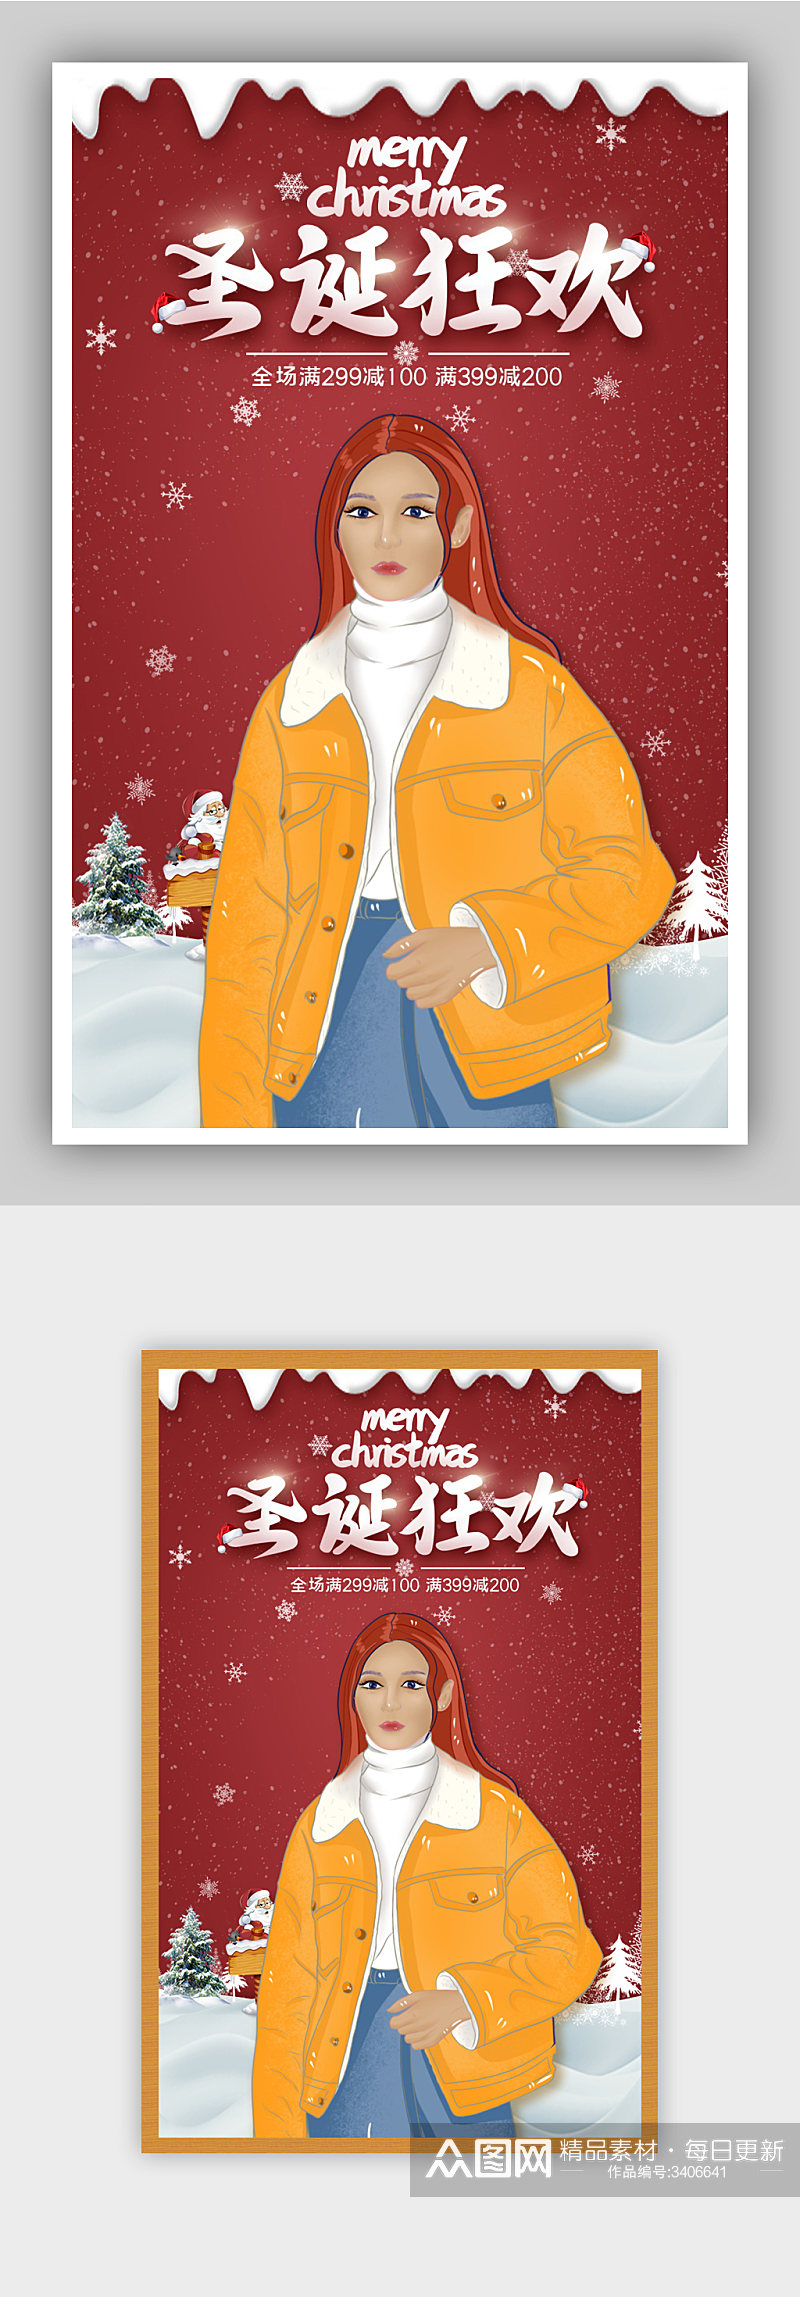 圣诞节快乐红色圣诞老人商品促销展示海报素材